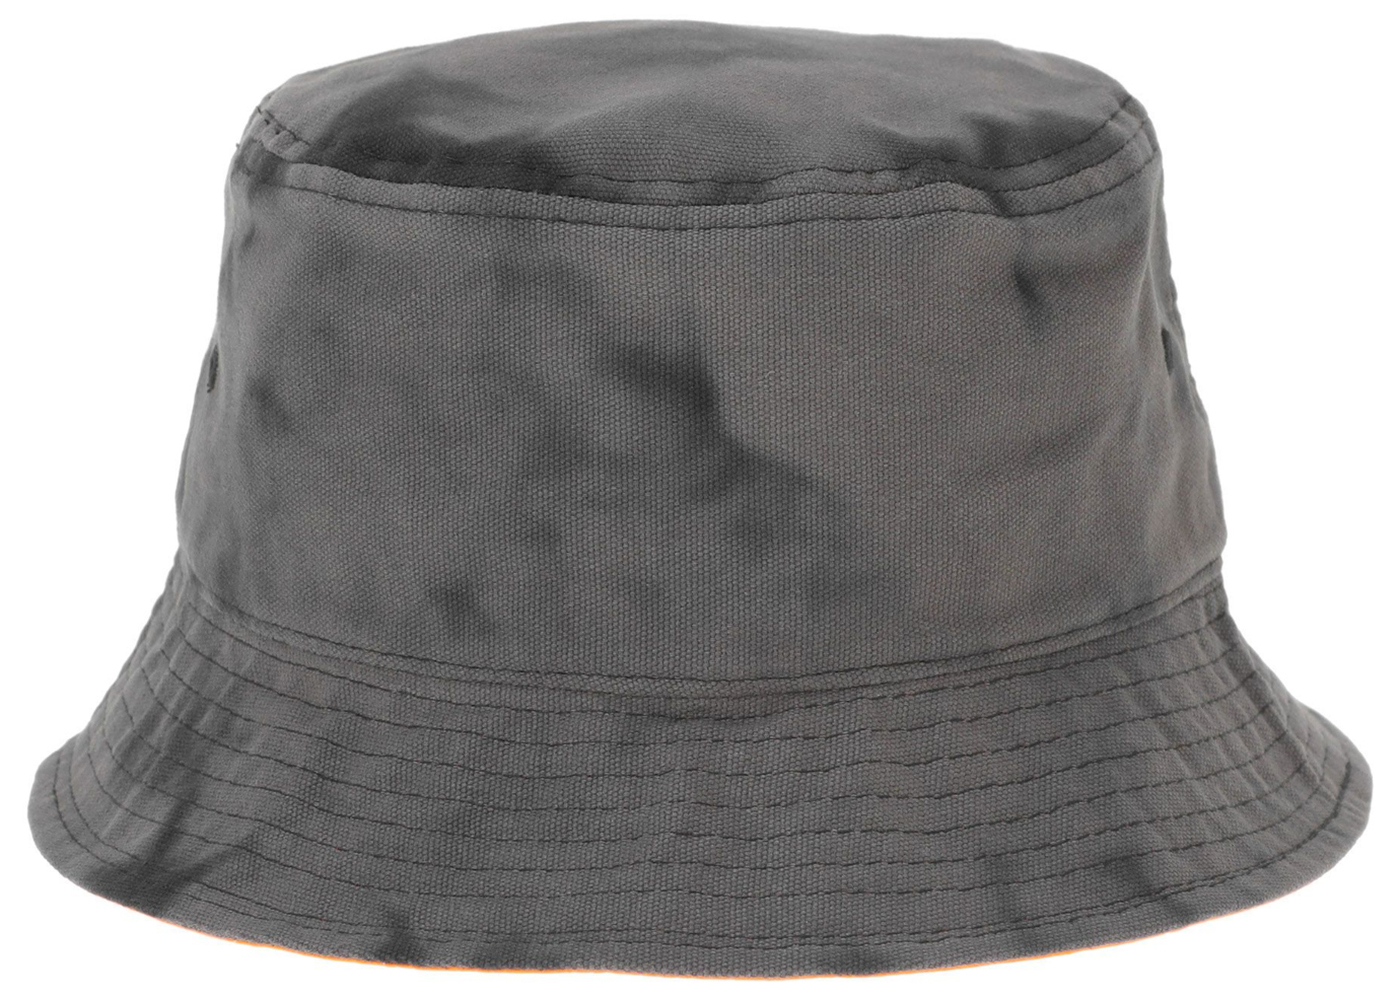 Palace x Porter Bucket Hat Black Wave Dye - SS23 - US